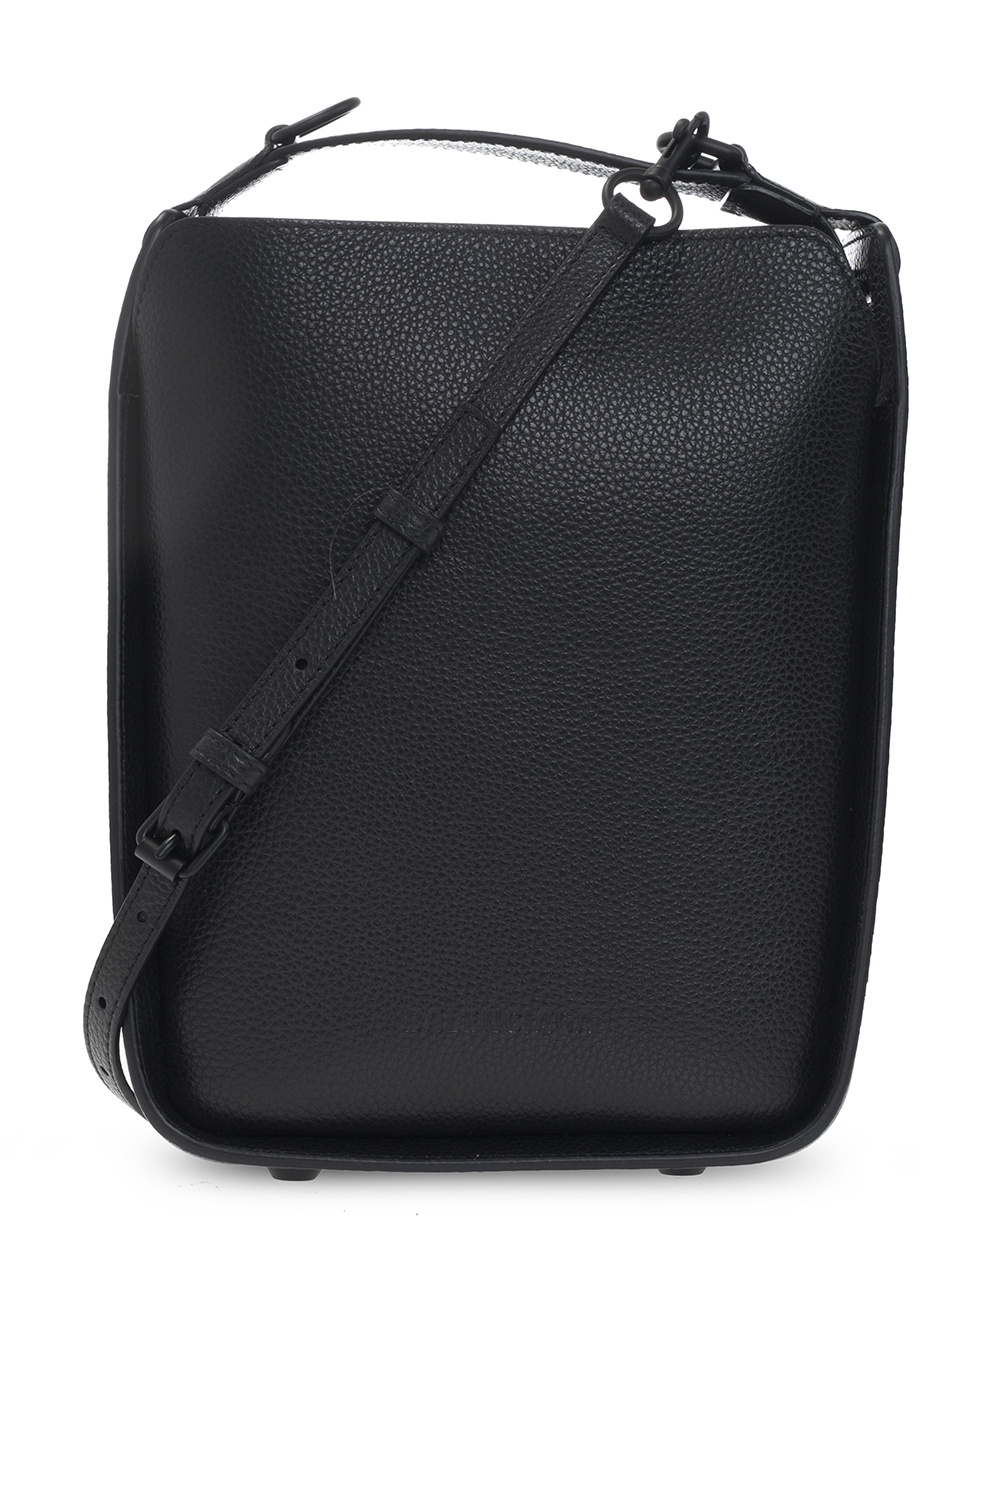 Tool 2.0' shoulder bag Balenciaga - balmain black belt bag -  InteragencyboardShops Sweden